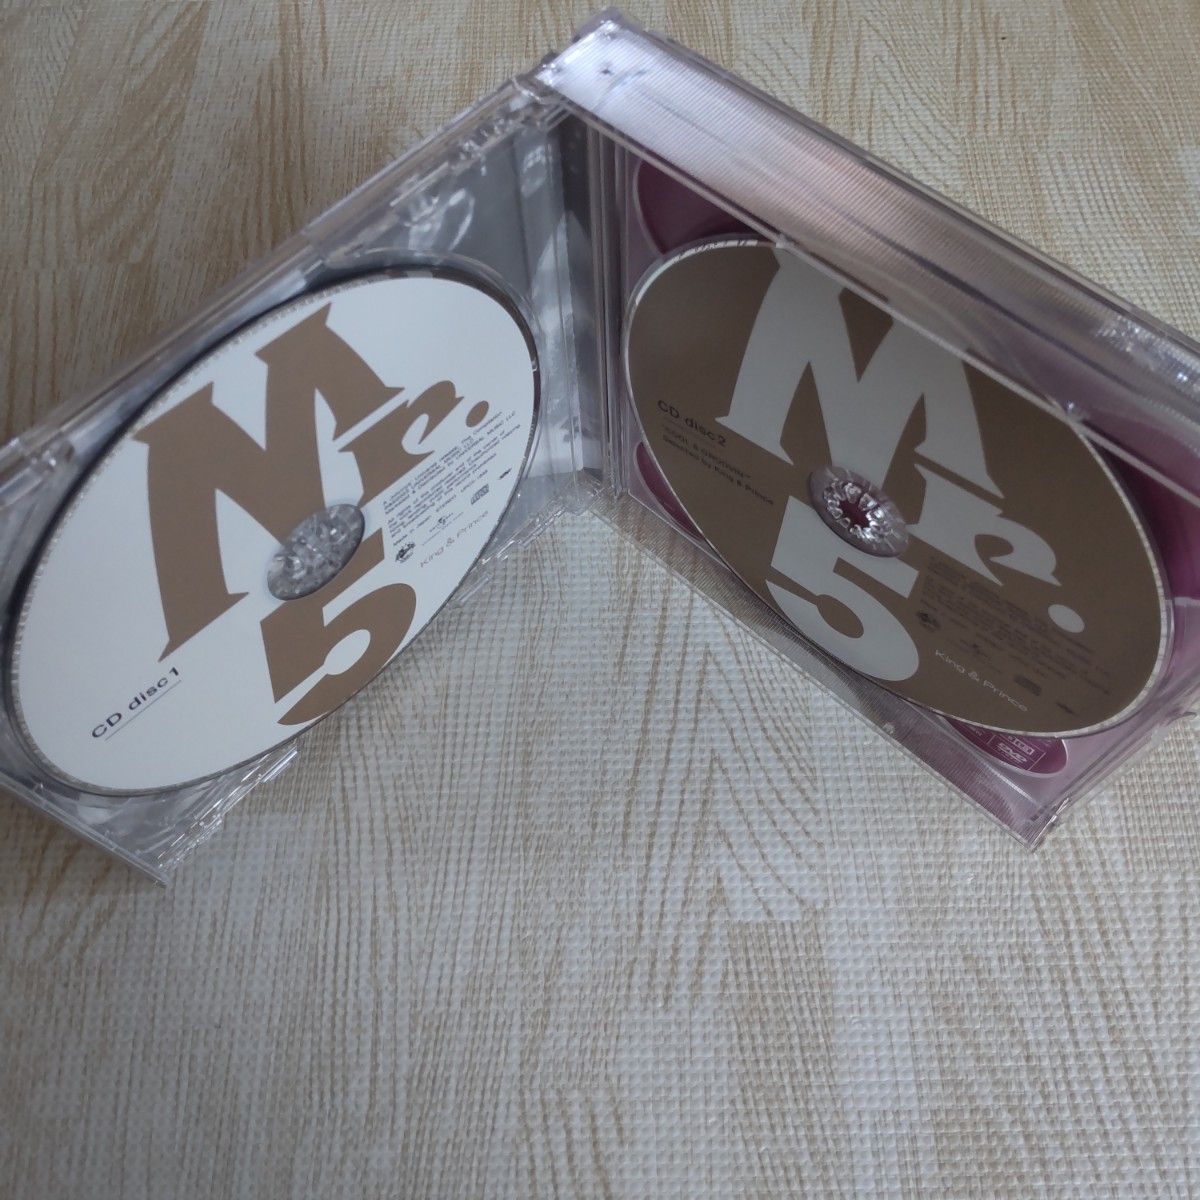 King & Prince Mr. 5 初回限定盤B/2CD+DVD/KPQP